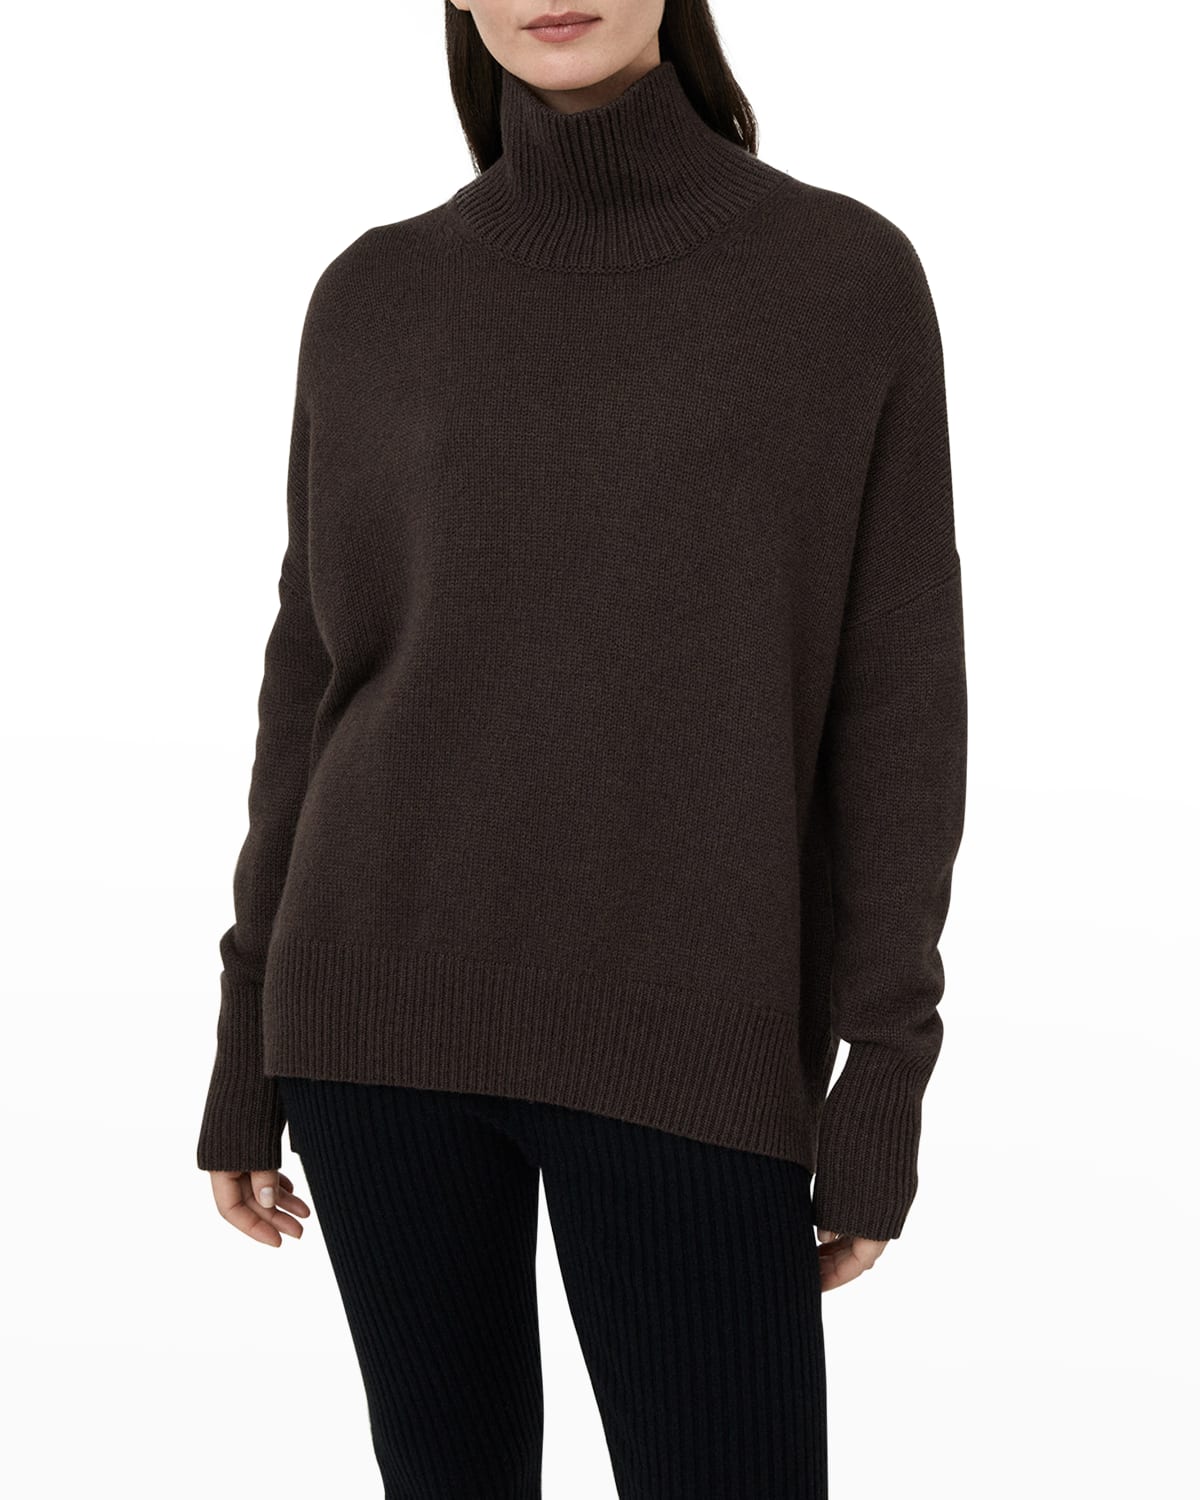 Heidi Cashmere Turtleneck Sweater